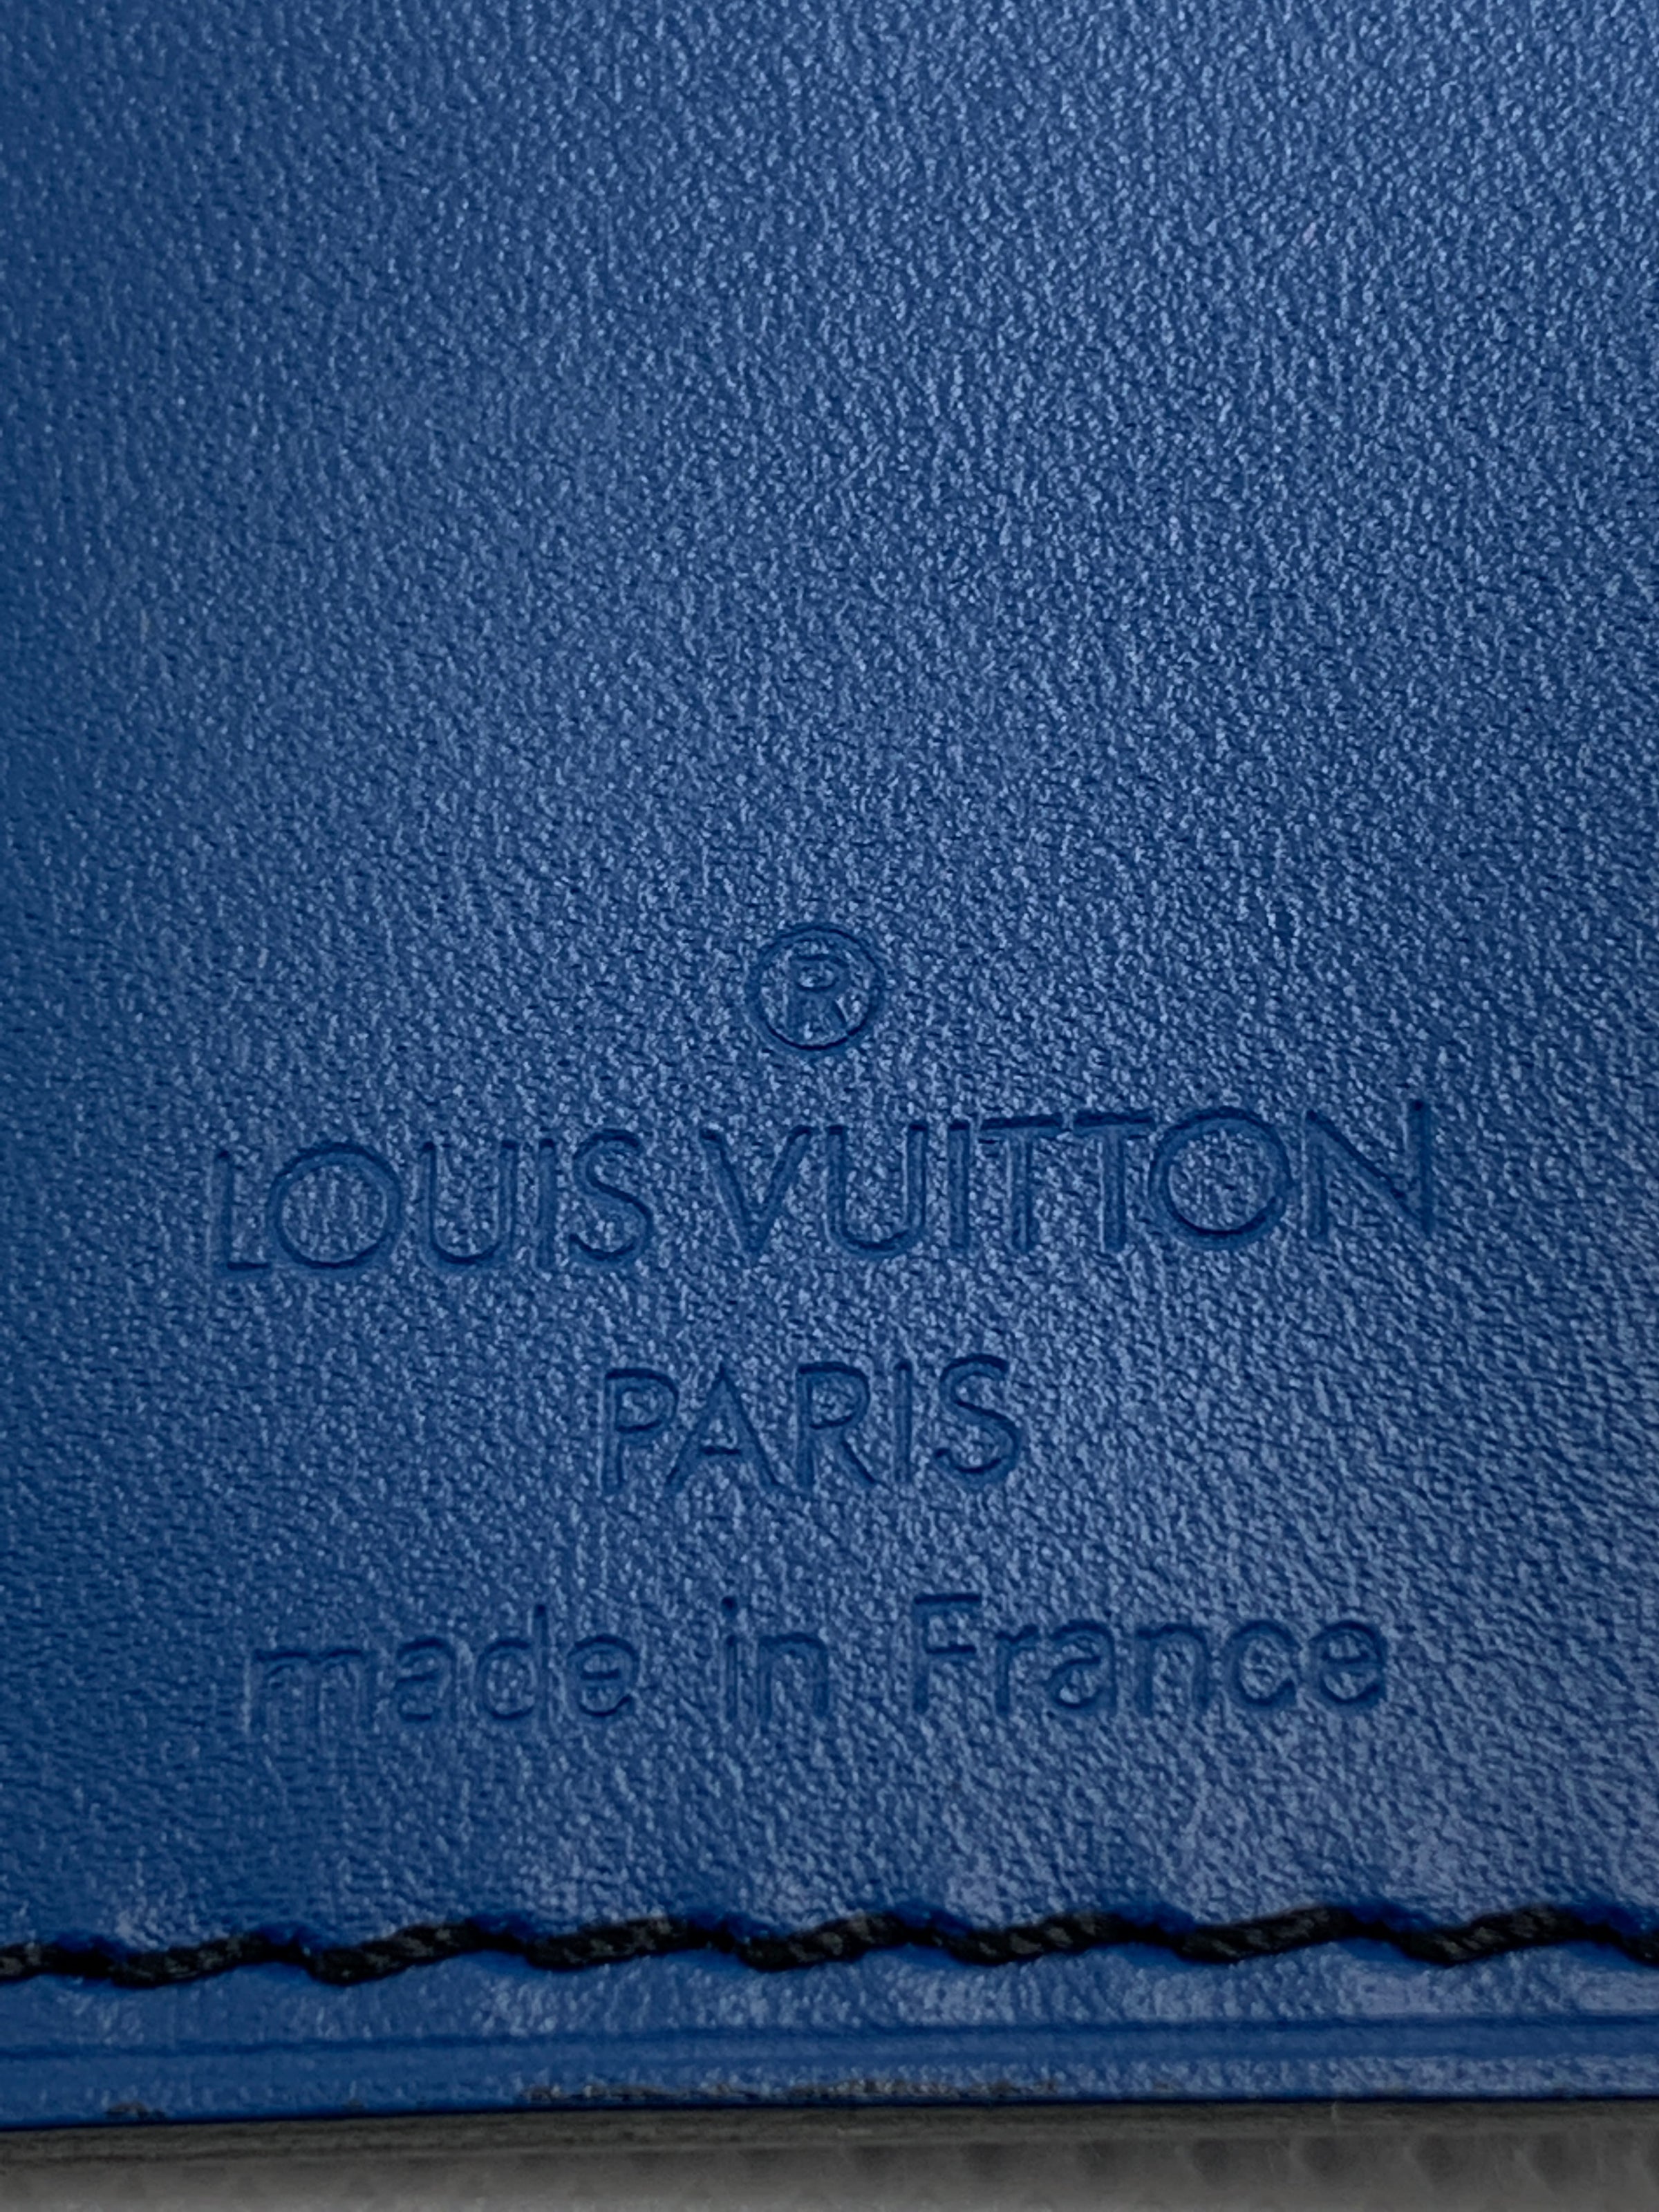 Louis Vuitton - Lock & Key & Name Luggage Tag & Poignet - Fashion